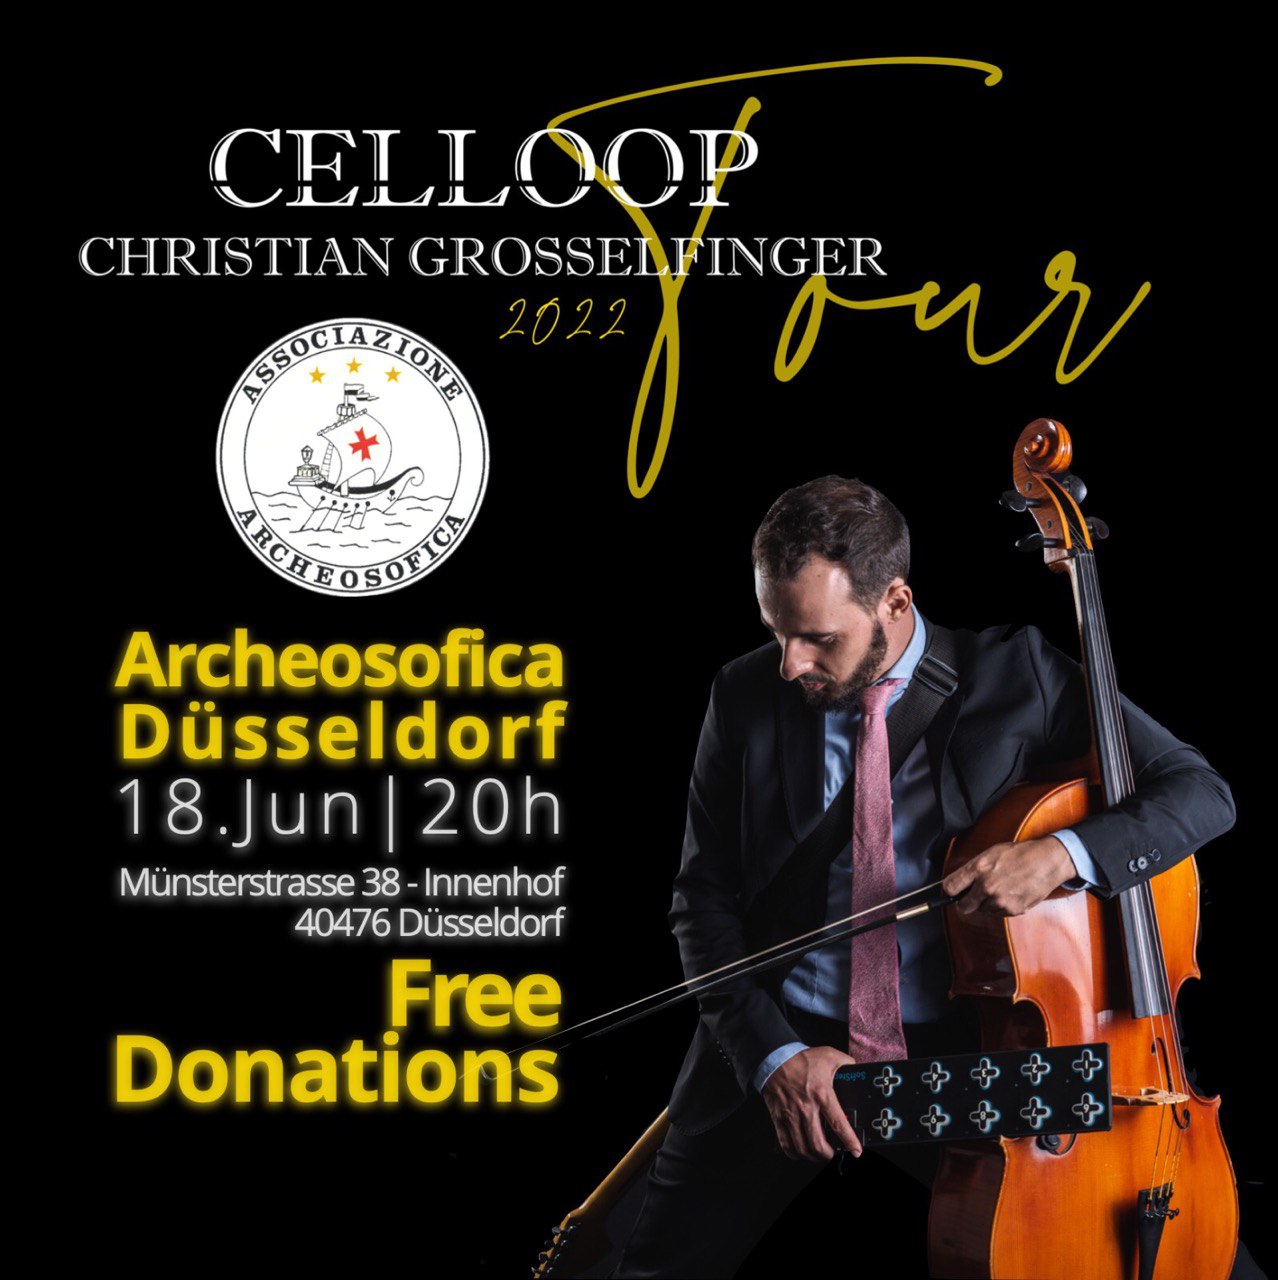 CELLOOP Tour 2022 - Christian Grosselfinger